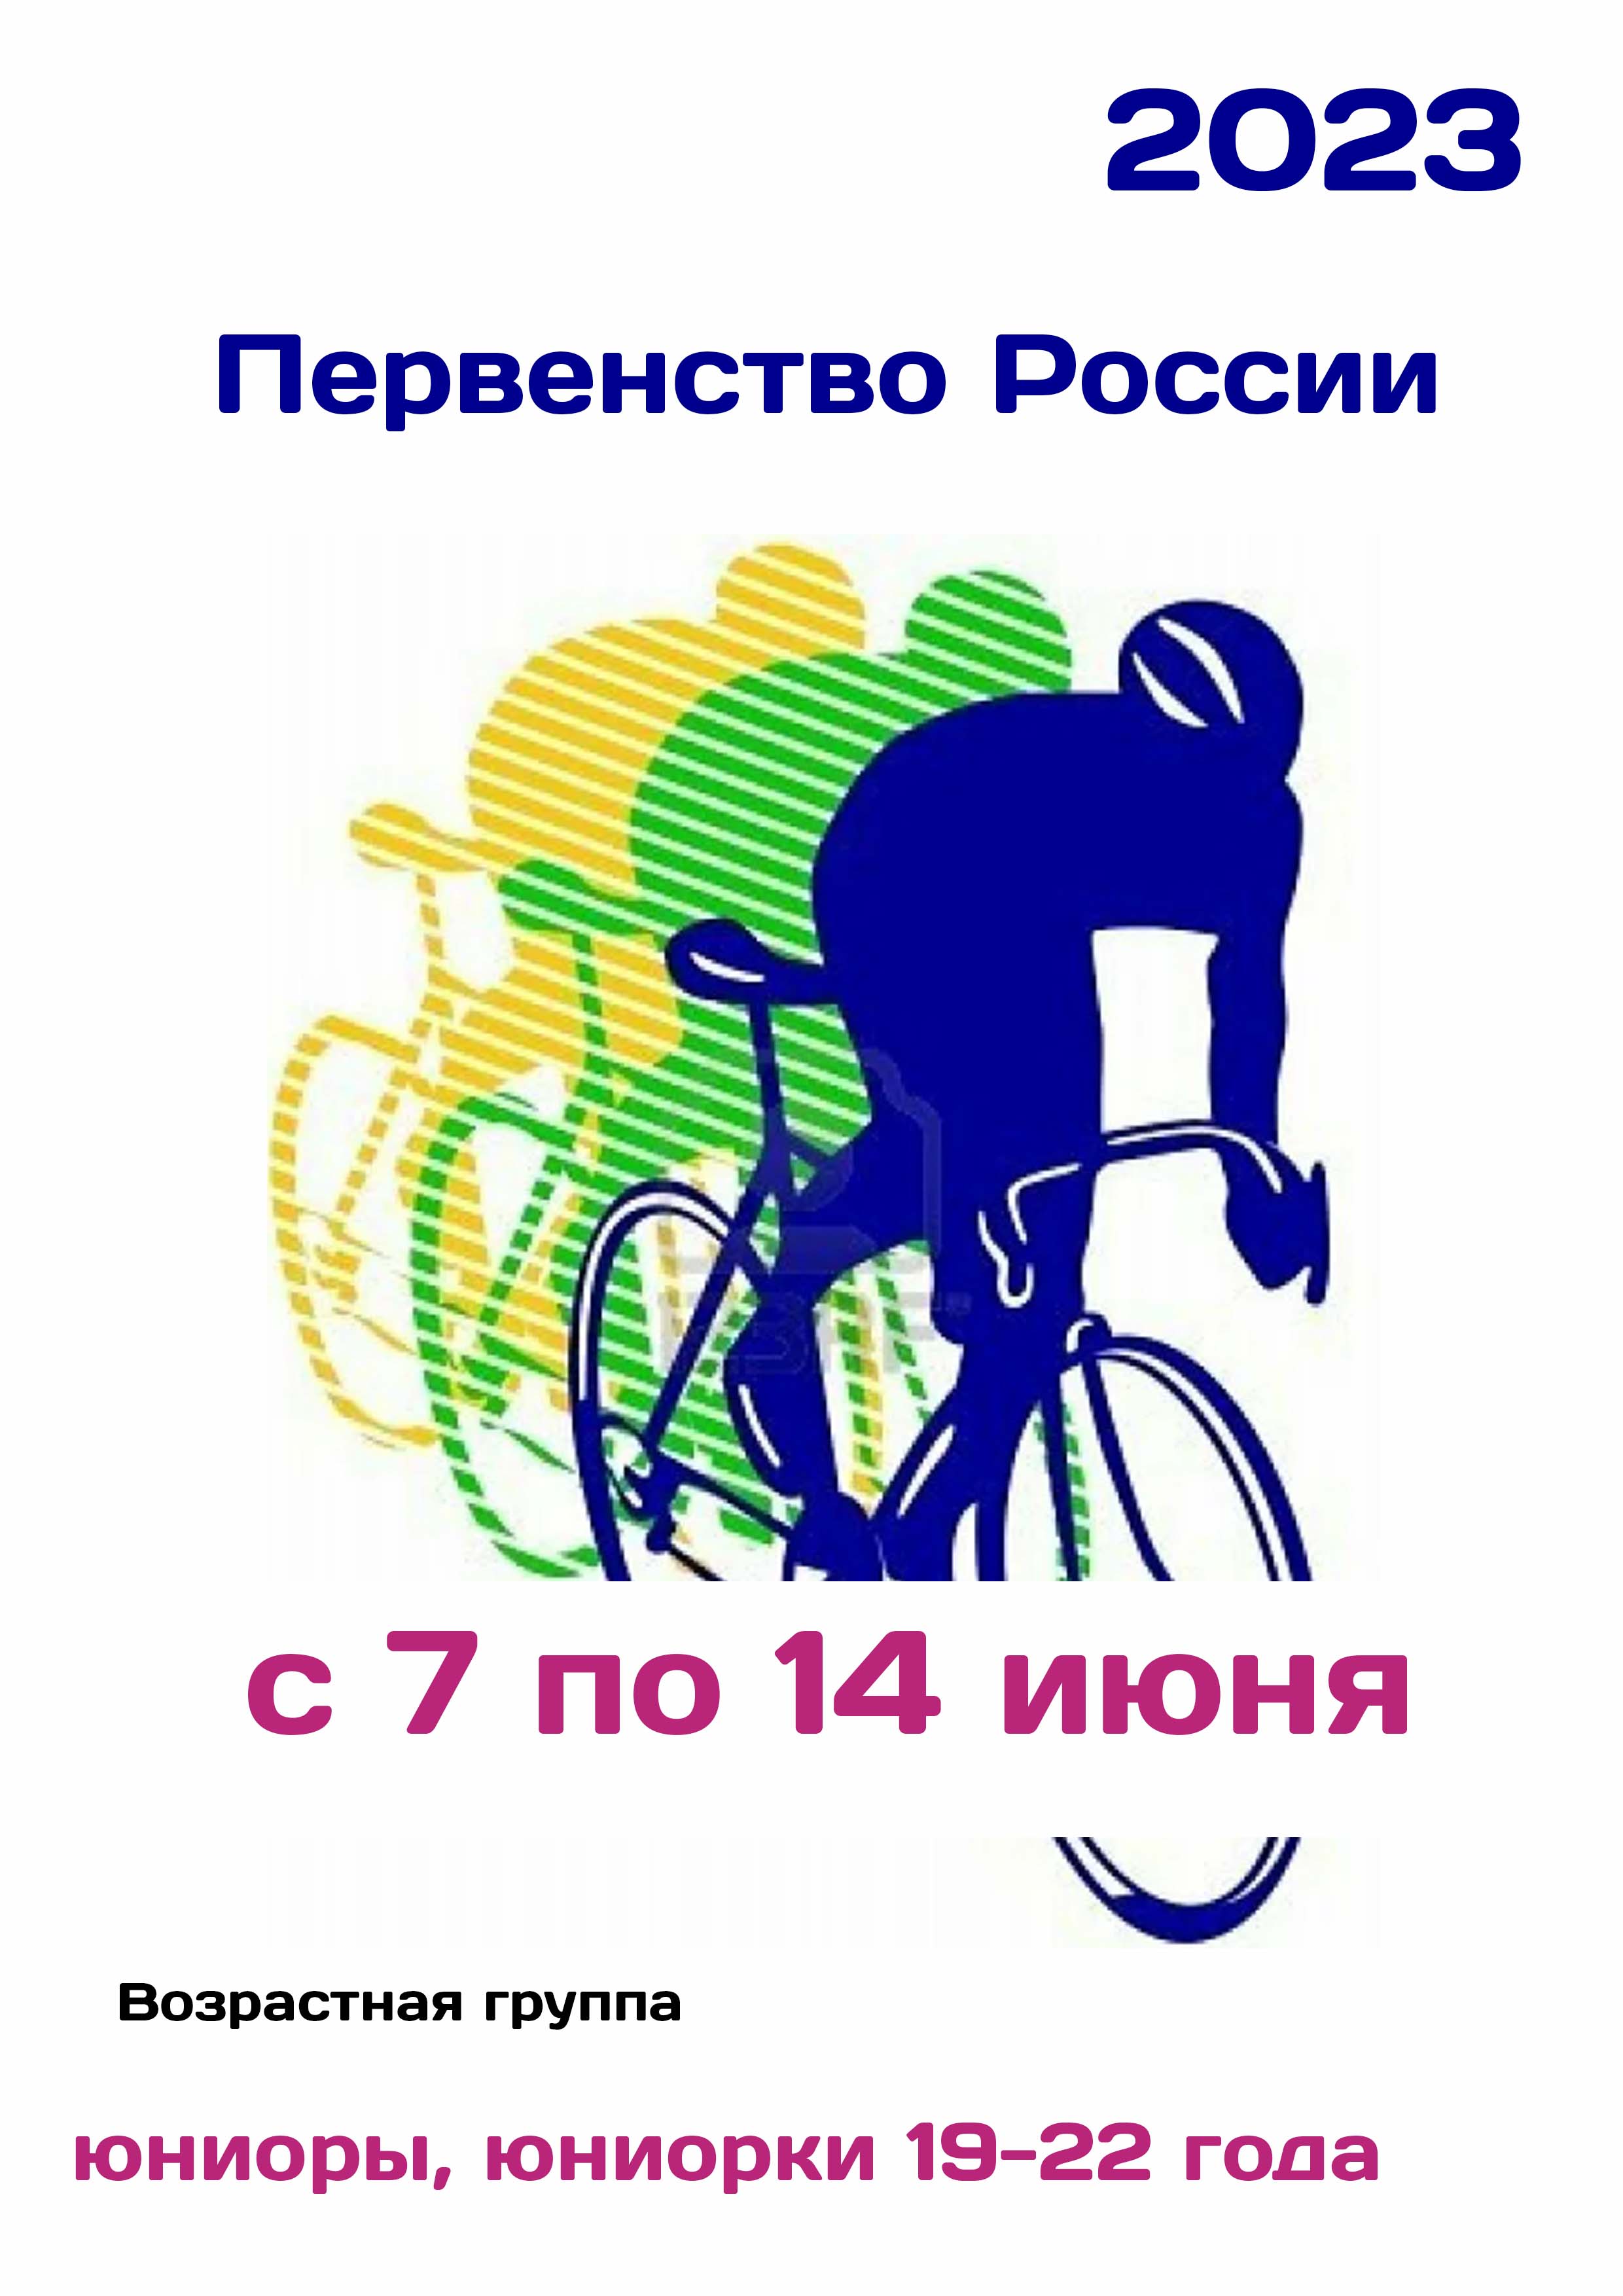 Первенство России по велоспорту 7  ג  ון
 2023  שנה
 